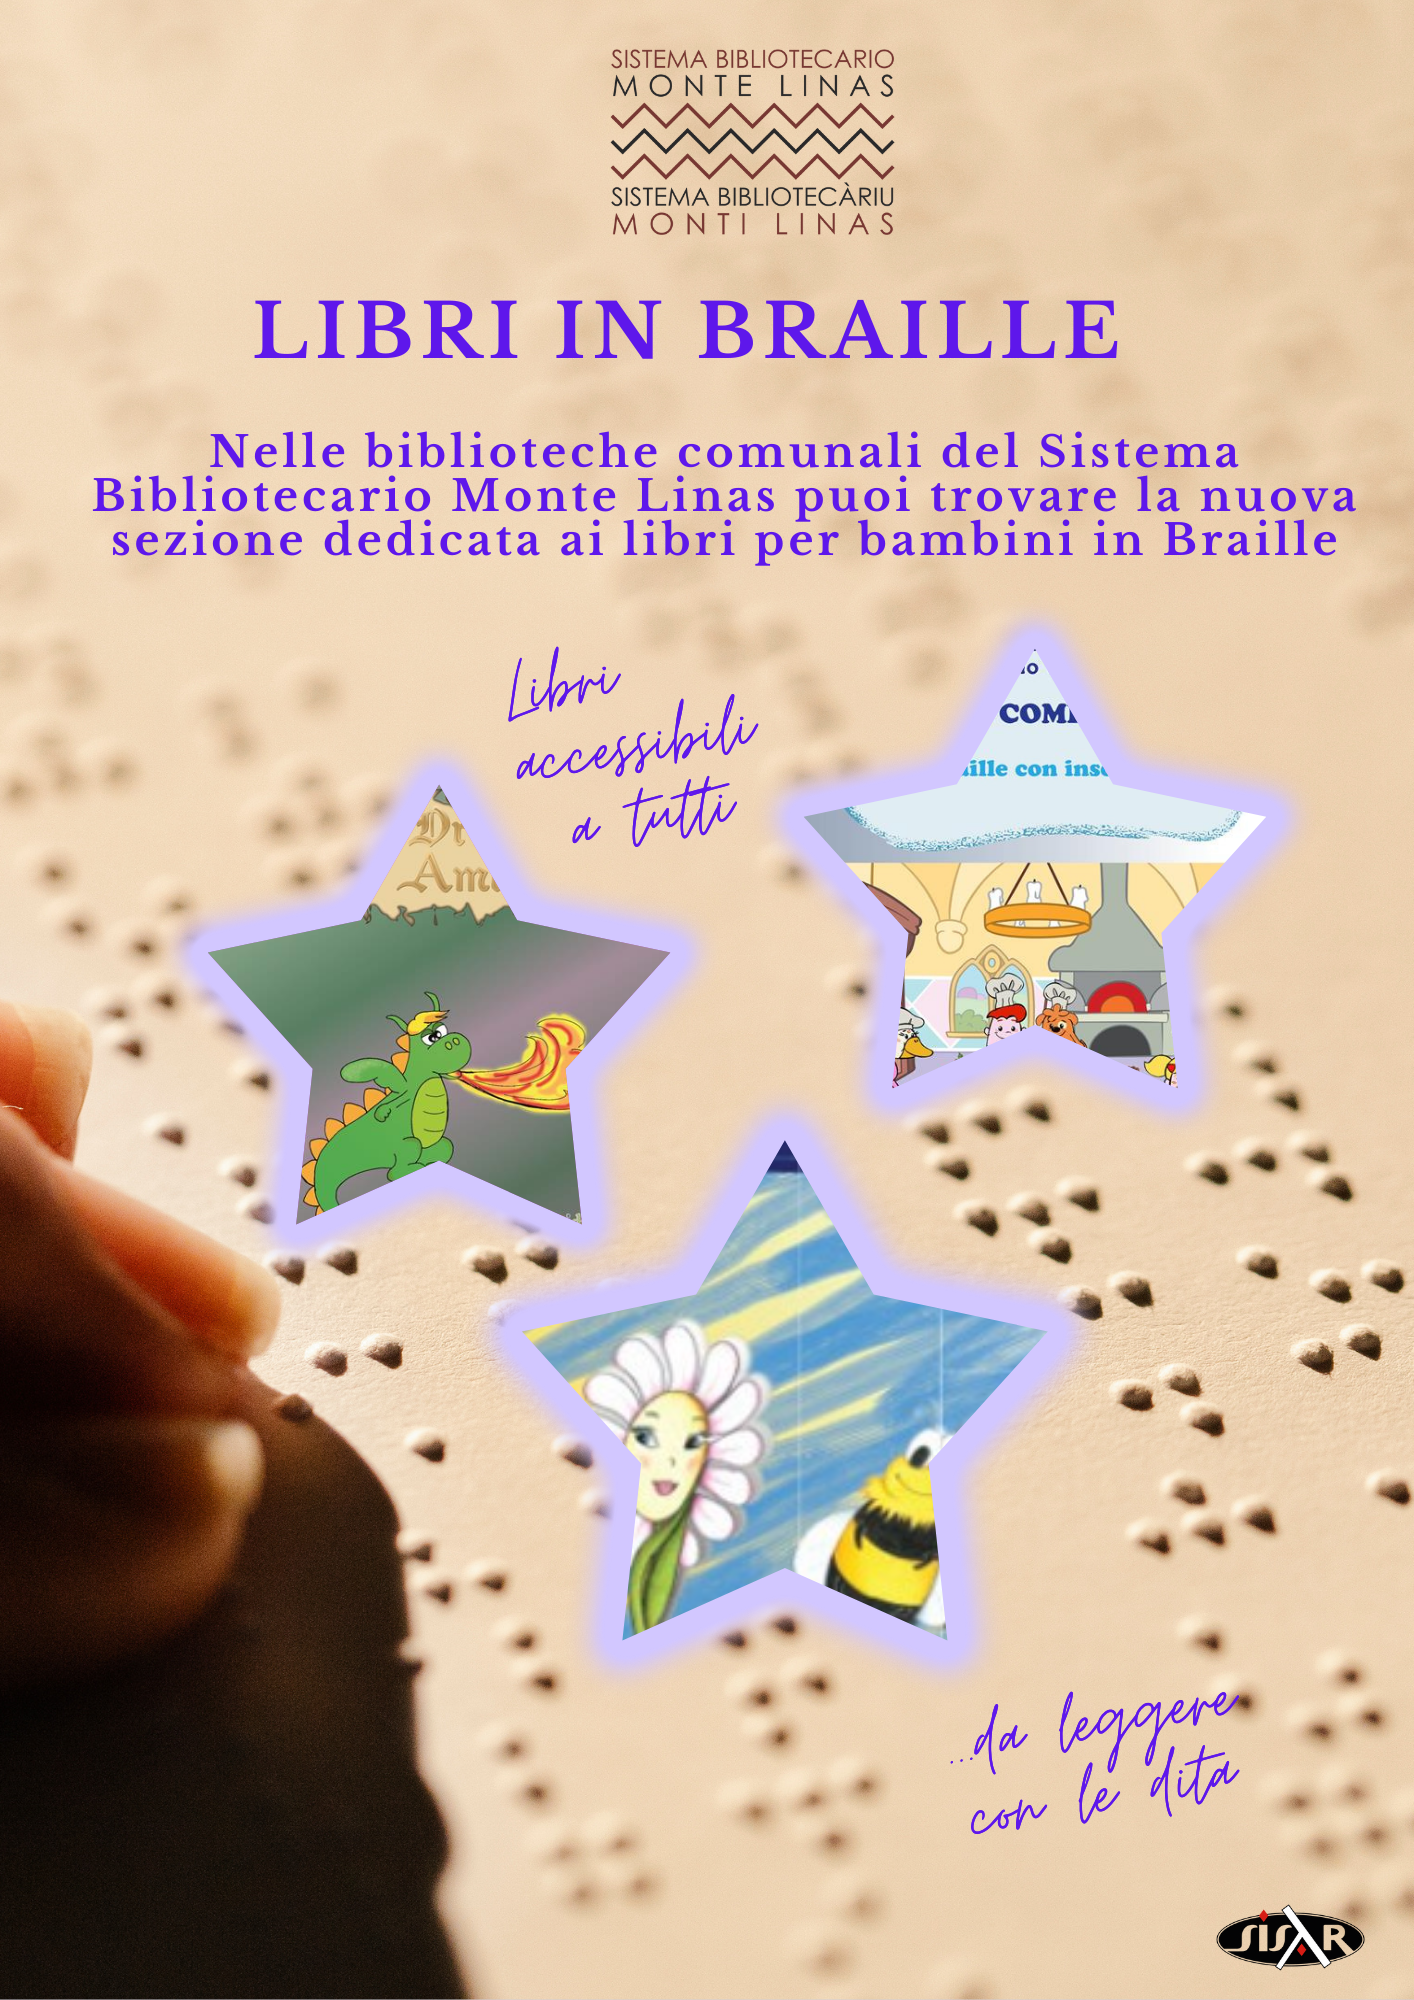 Comune di Pesaro : I libri tattili illustrati della Biblioteca Louis Braille